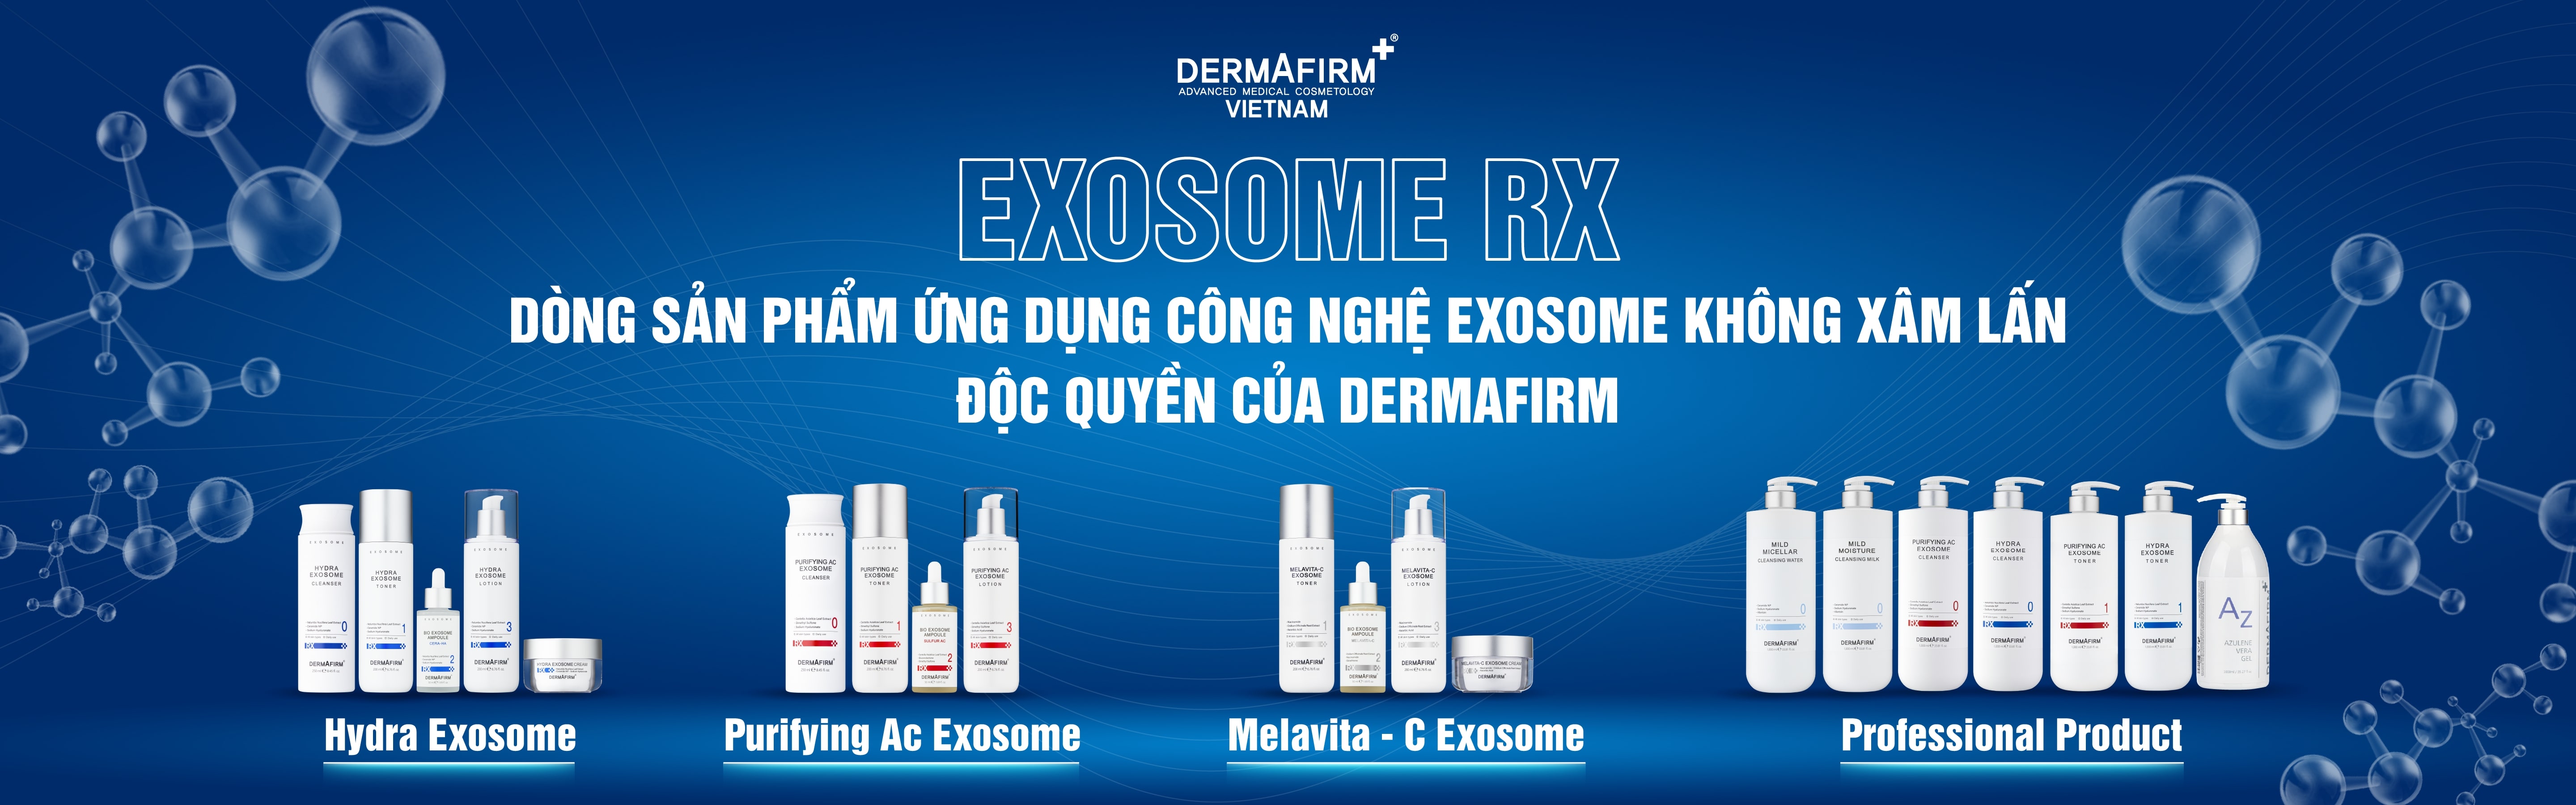 Bộ Melavita-C Exosome - Bộ đặc trị làm sáng tái sinh làn da không đều màu